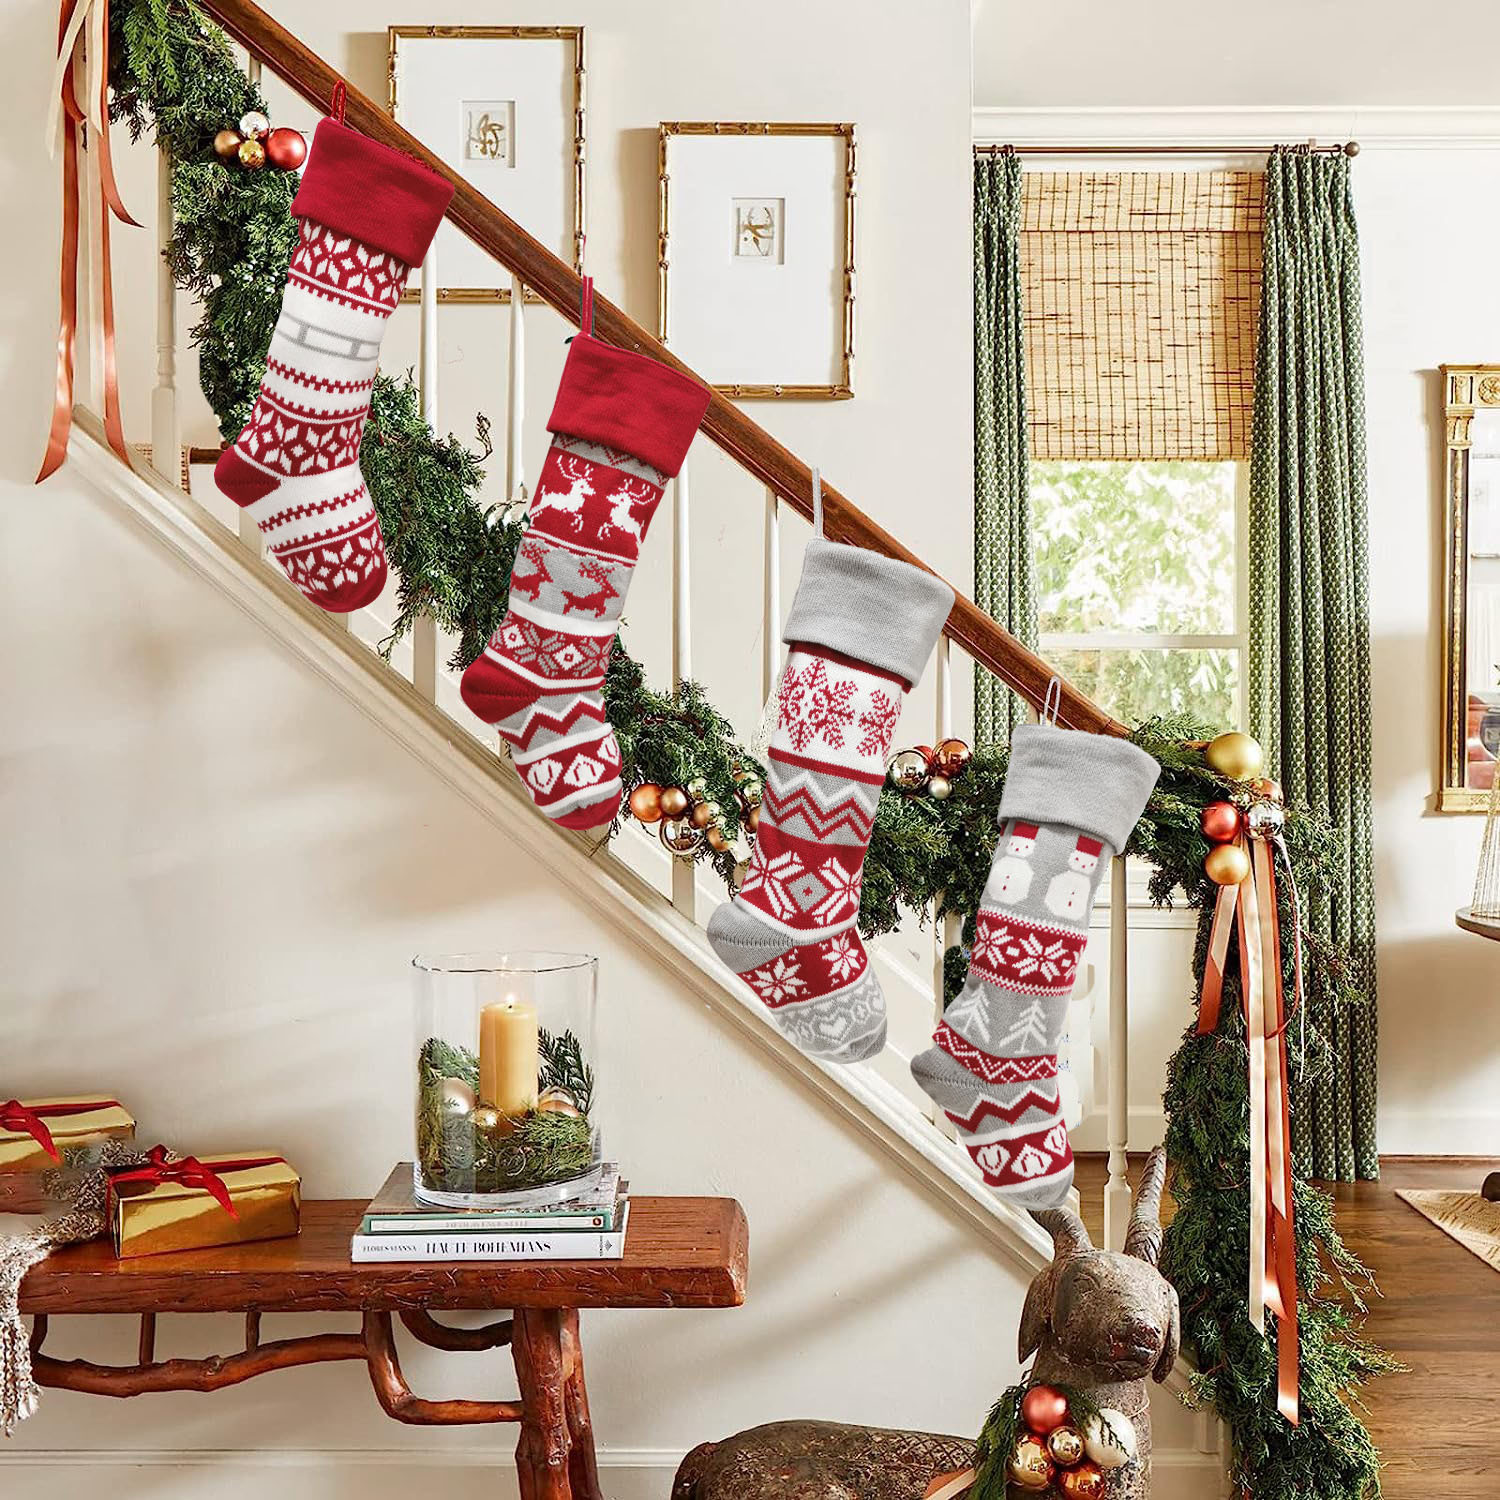 Handgefertigte dekorative Weihnachtssocken aus Strick – festliches Weihnachtsgeschenk